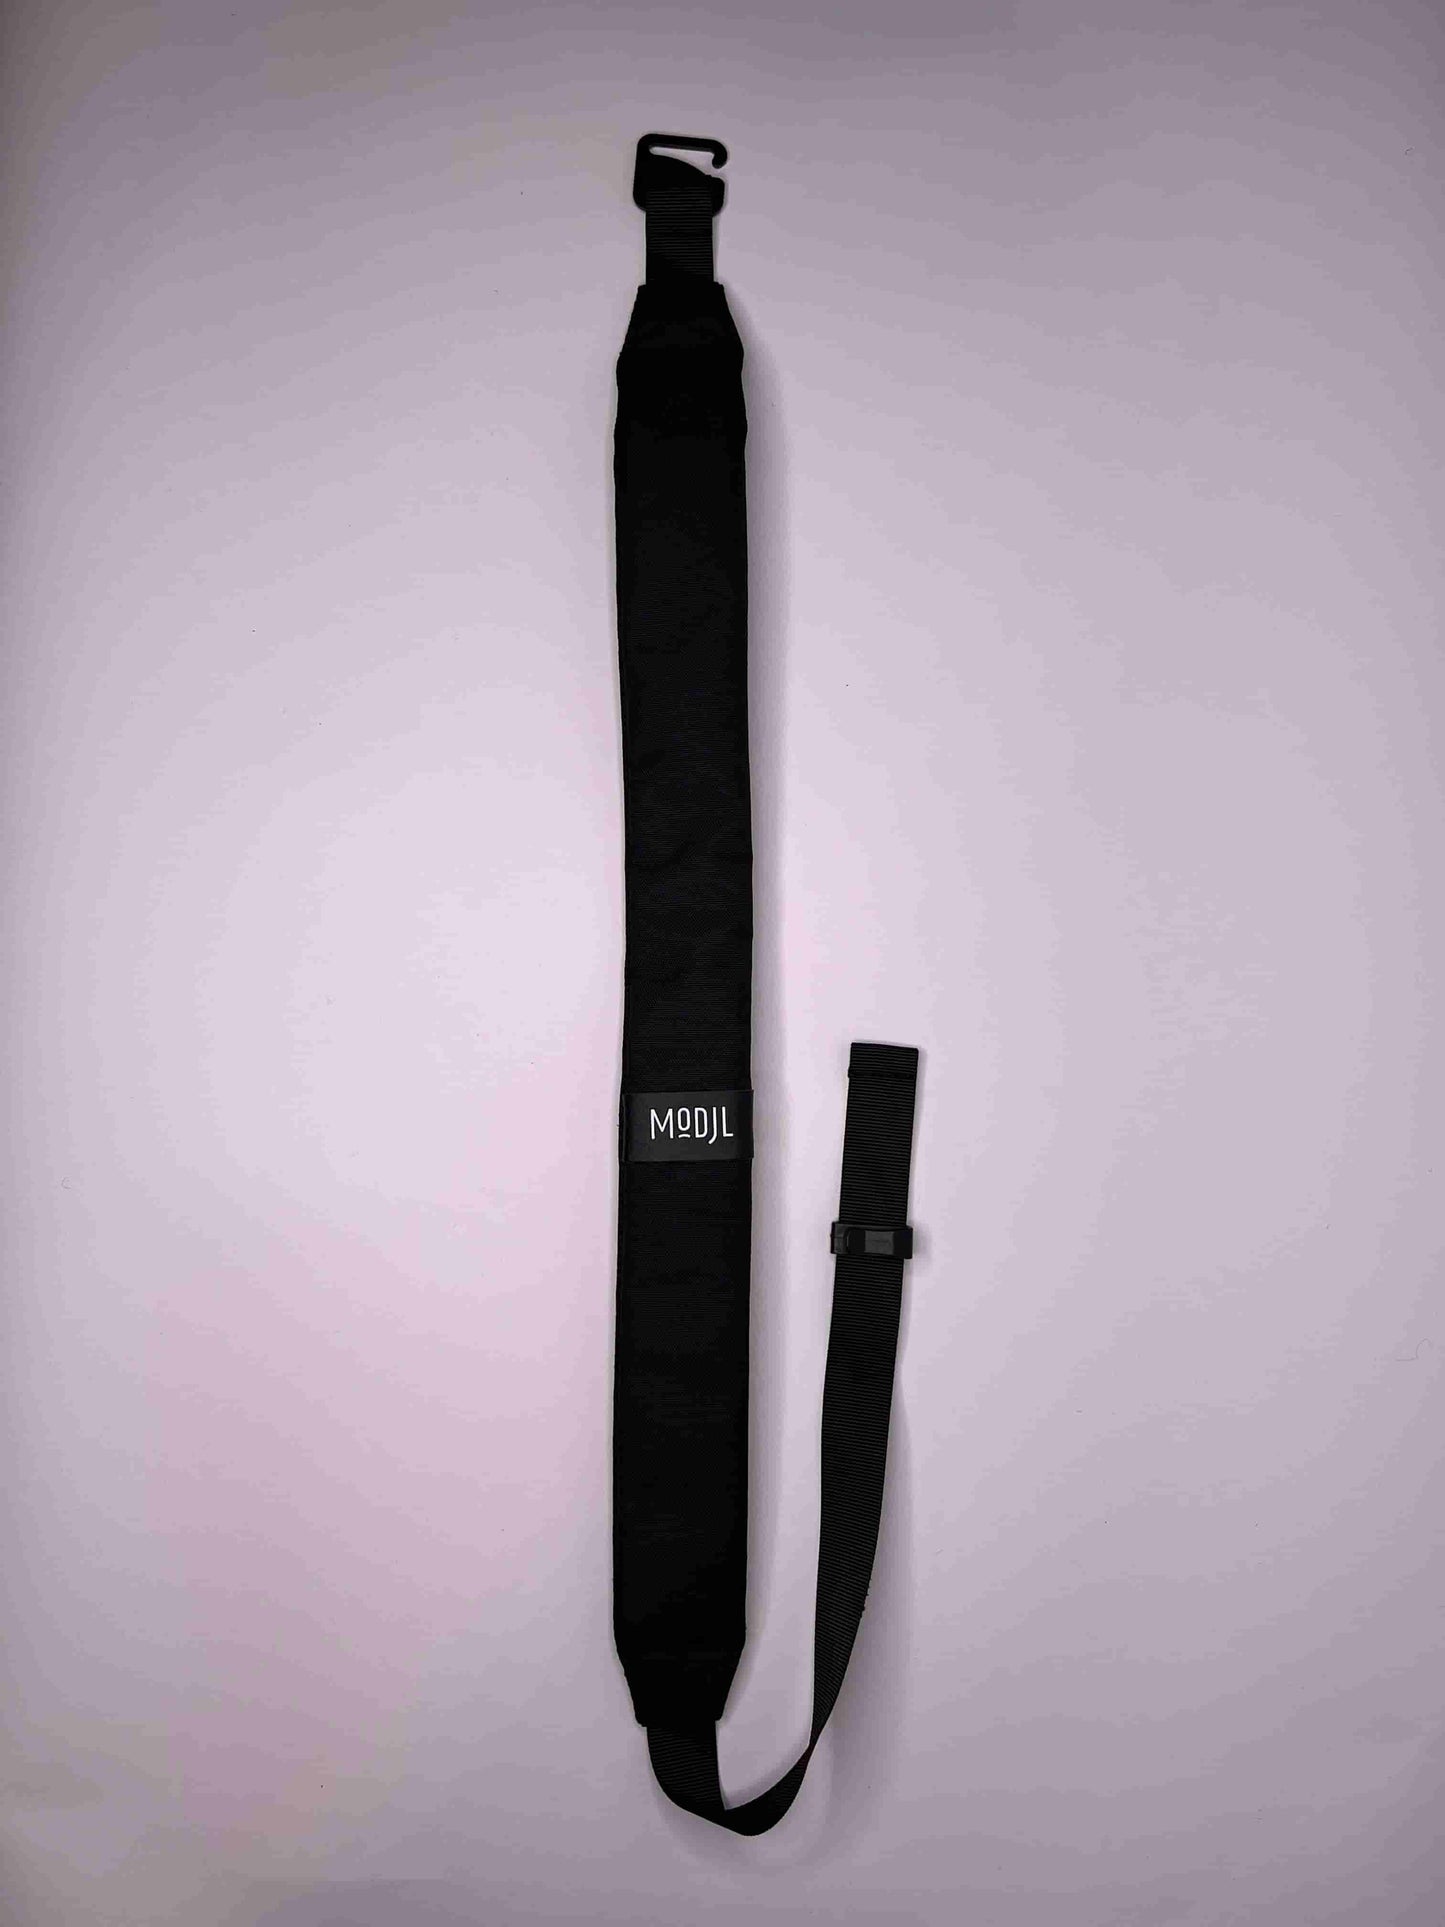 the-shoulder-strap-modjl-modular-backpack-black